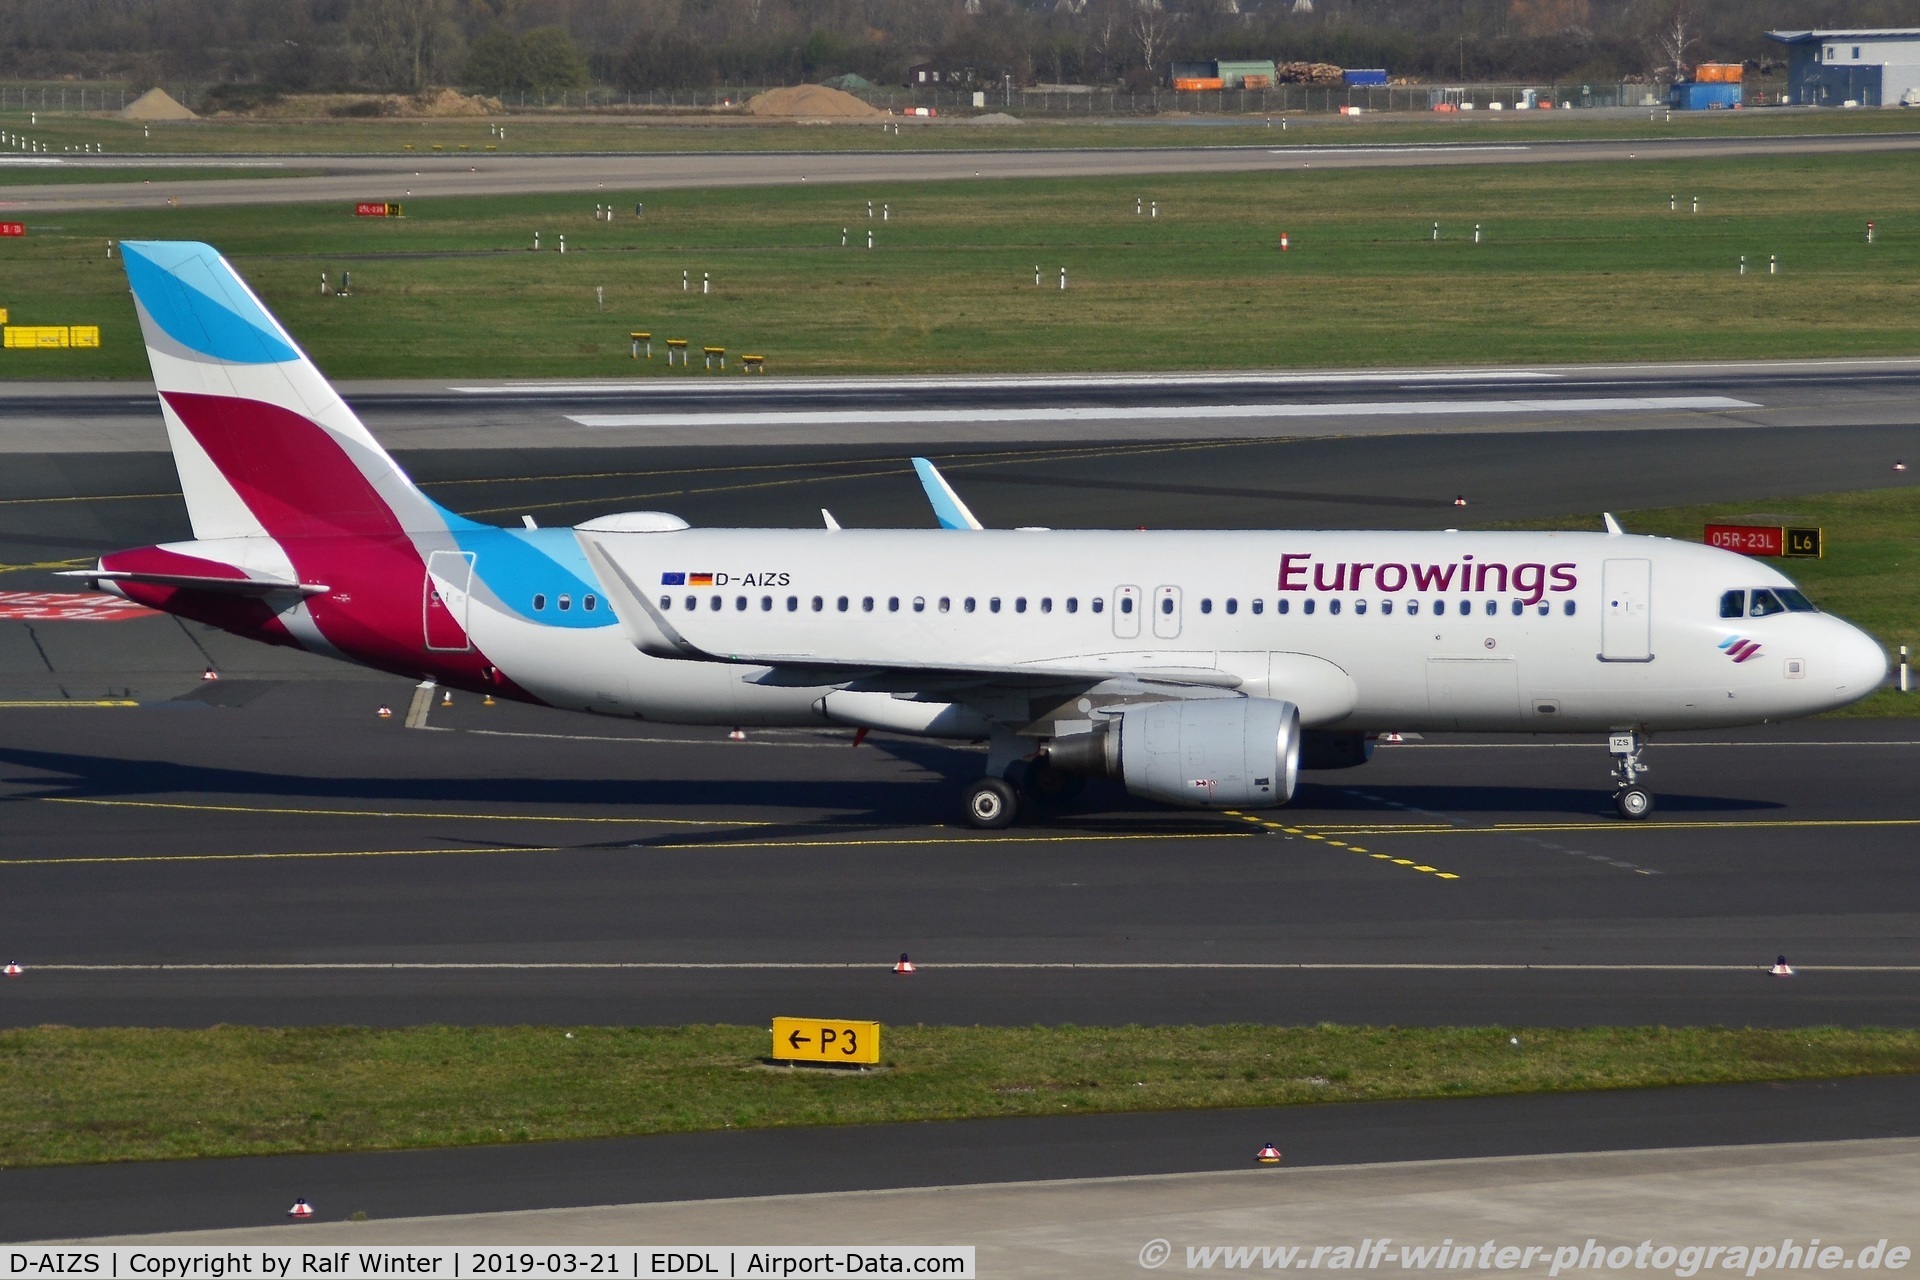 D-AIZS, 2013 Airbus A320-214 C/N 5557, Airbus A320-214(W) - EW EWG Eurowings ex LUftnasa 'Seeheim-Jugenheim' - 5557 - D-AIZS - 21.03.2019 - DUS